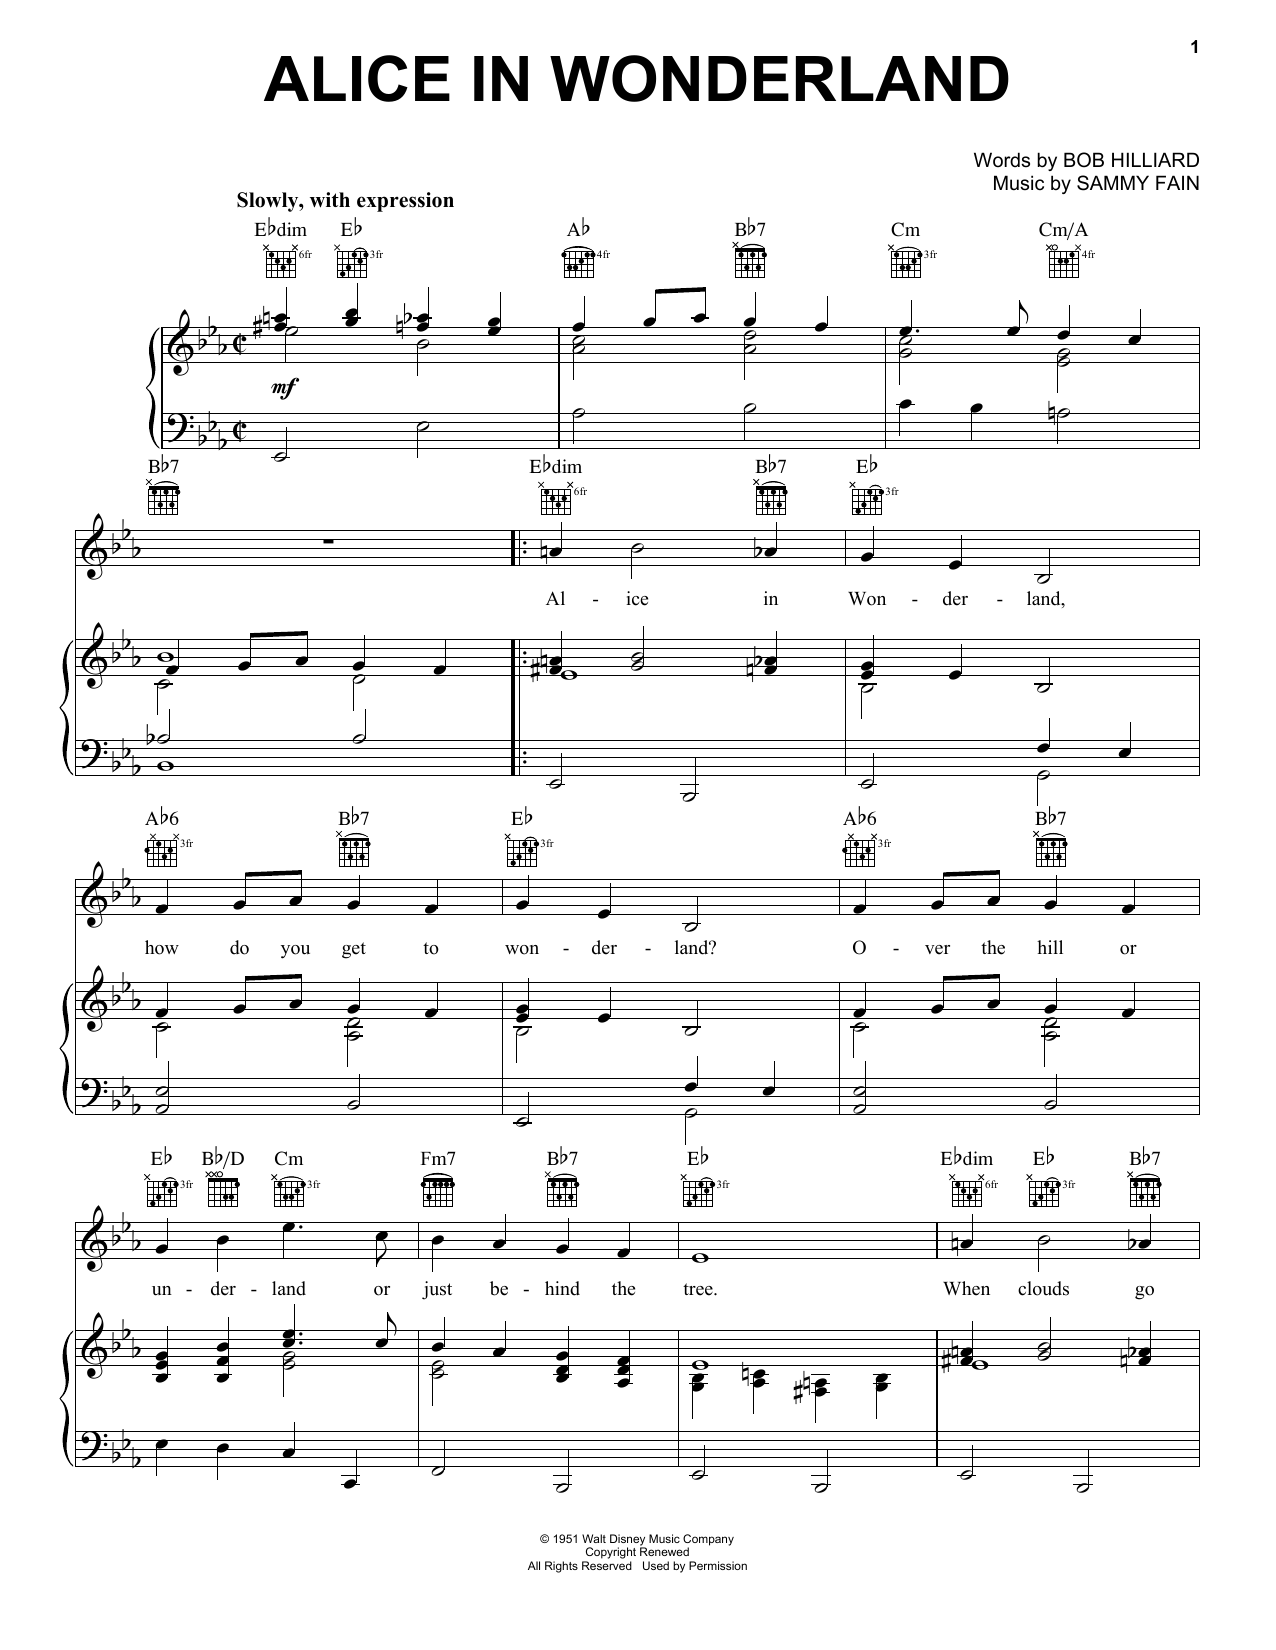 Bill Evans Alice In Wonderland Sheet Music Notes & Chords for Ukulele - Download or Print PDF